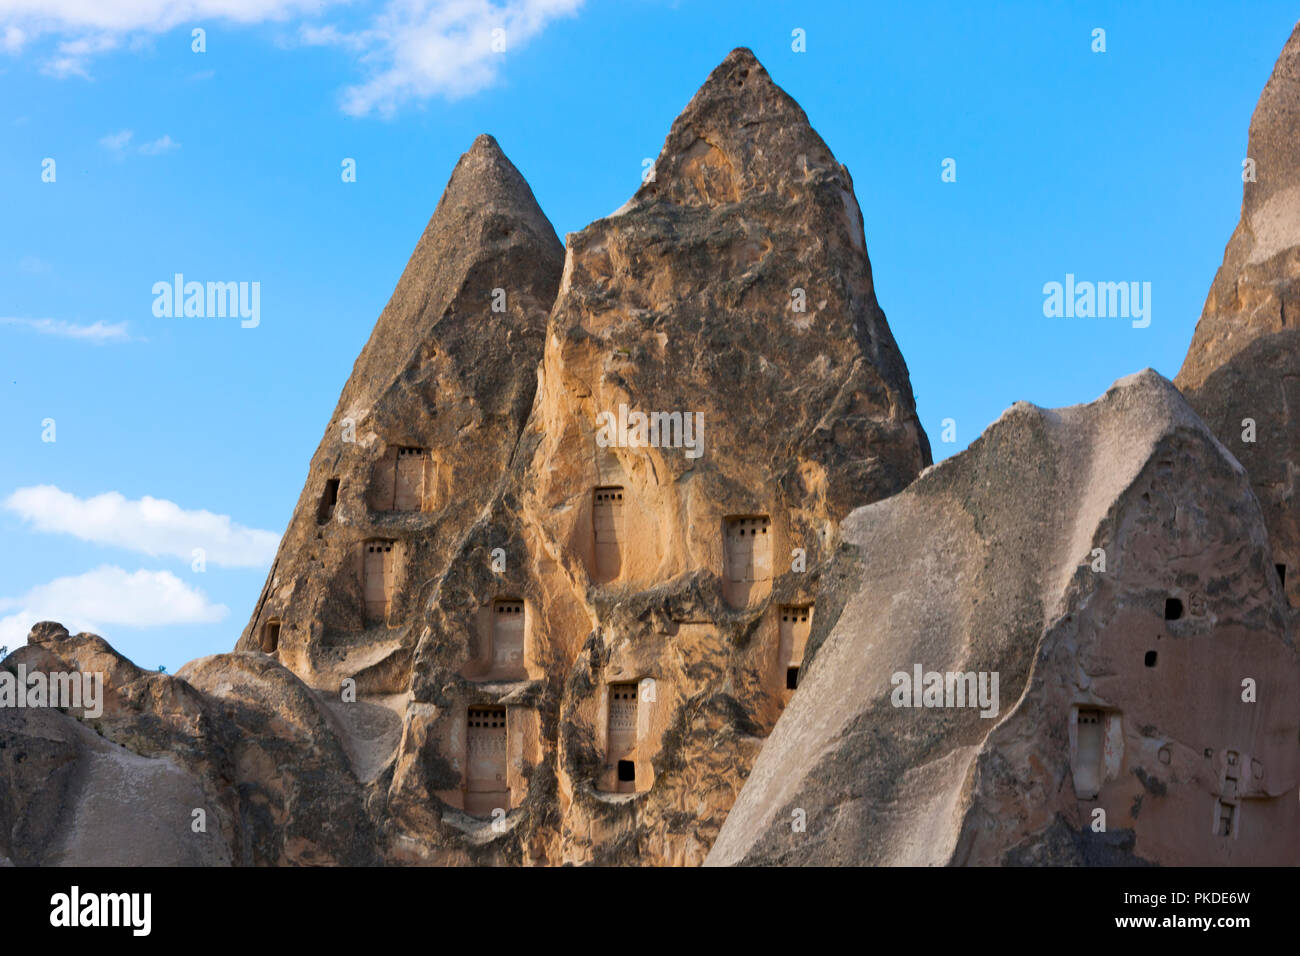 Häuser geschnitzt in den Felsen im Tal, Göreme, Kappadokien, Türkei (UNESCO Weltkulturerbe) Stockfoto